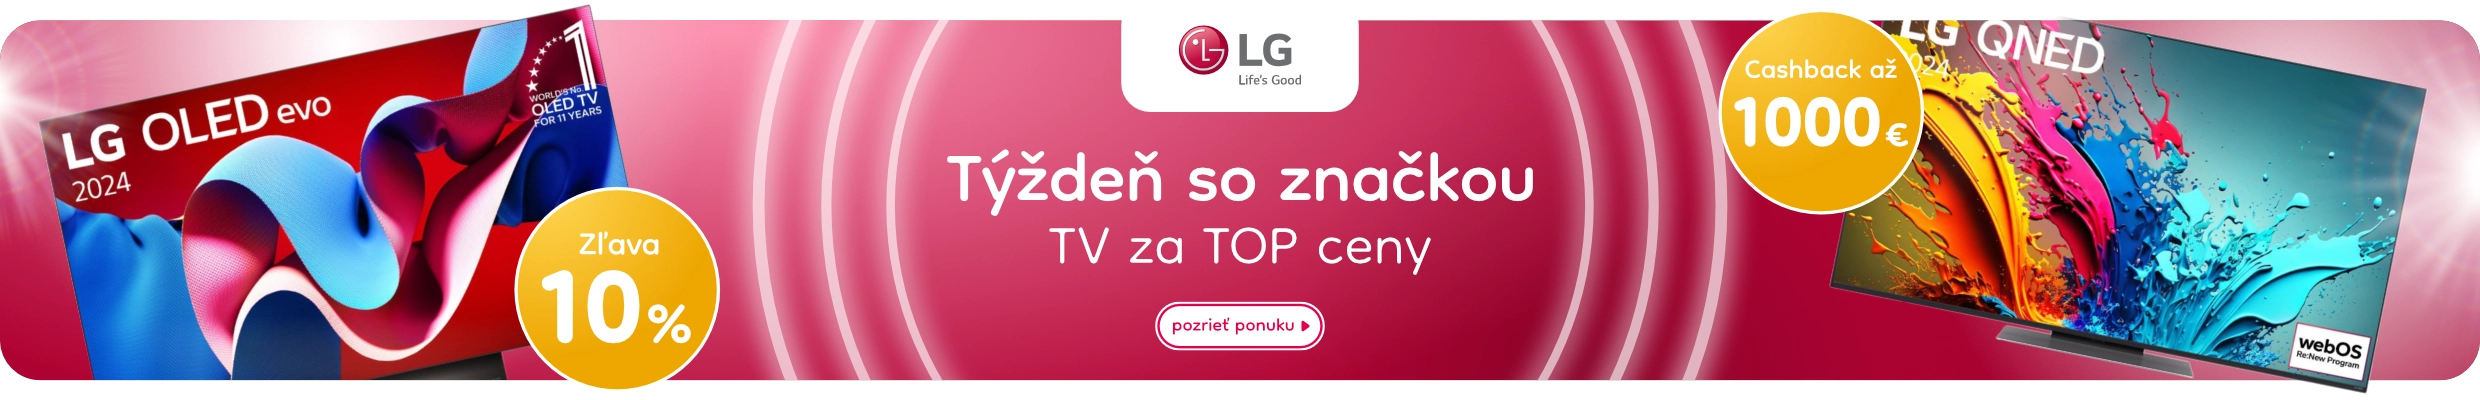 LG TV top ceny 2272872024